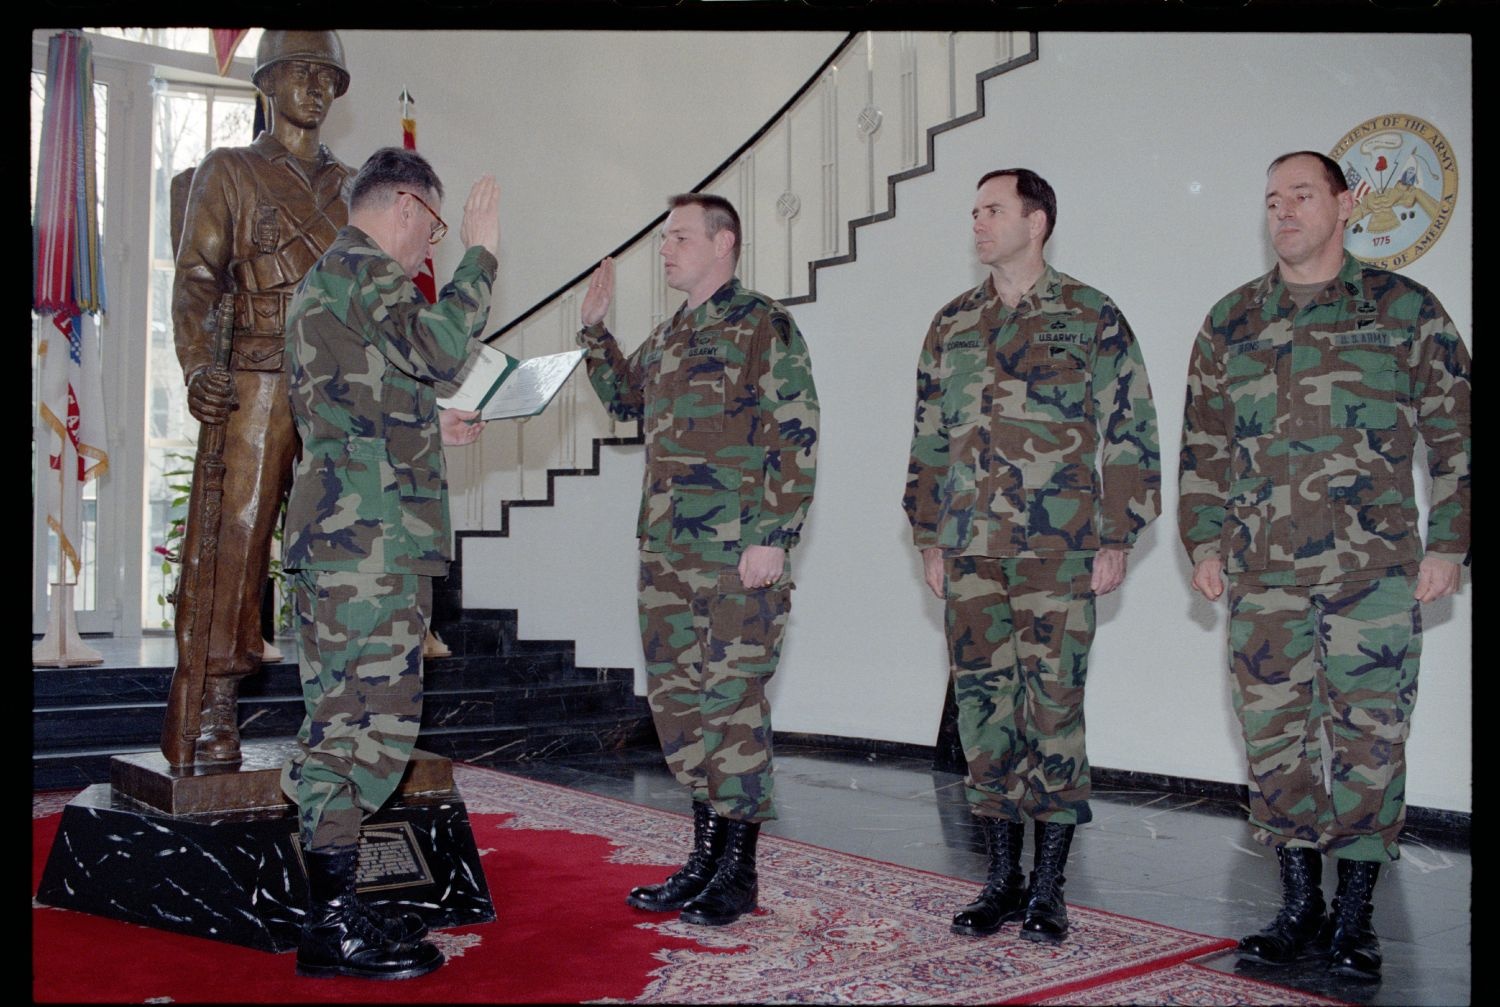 Fotografie: Wiederverpflichtung von Soldaten der U.S. Army Berlin im US-Hauptquartier in Berlin-Dahlem